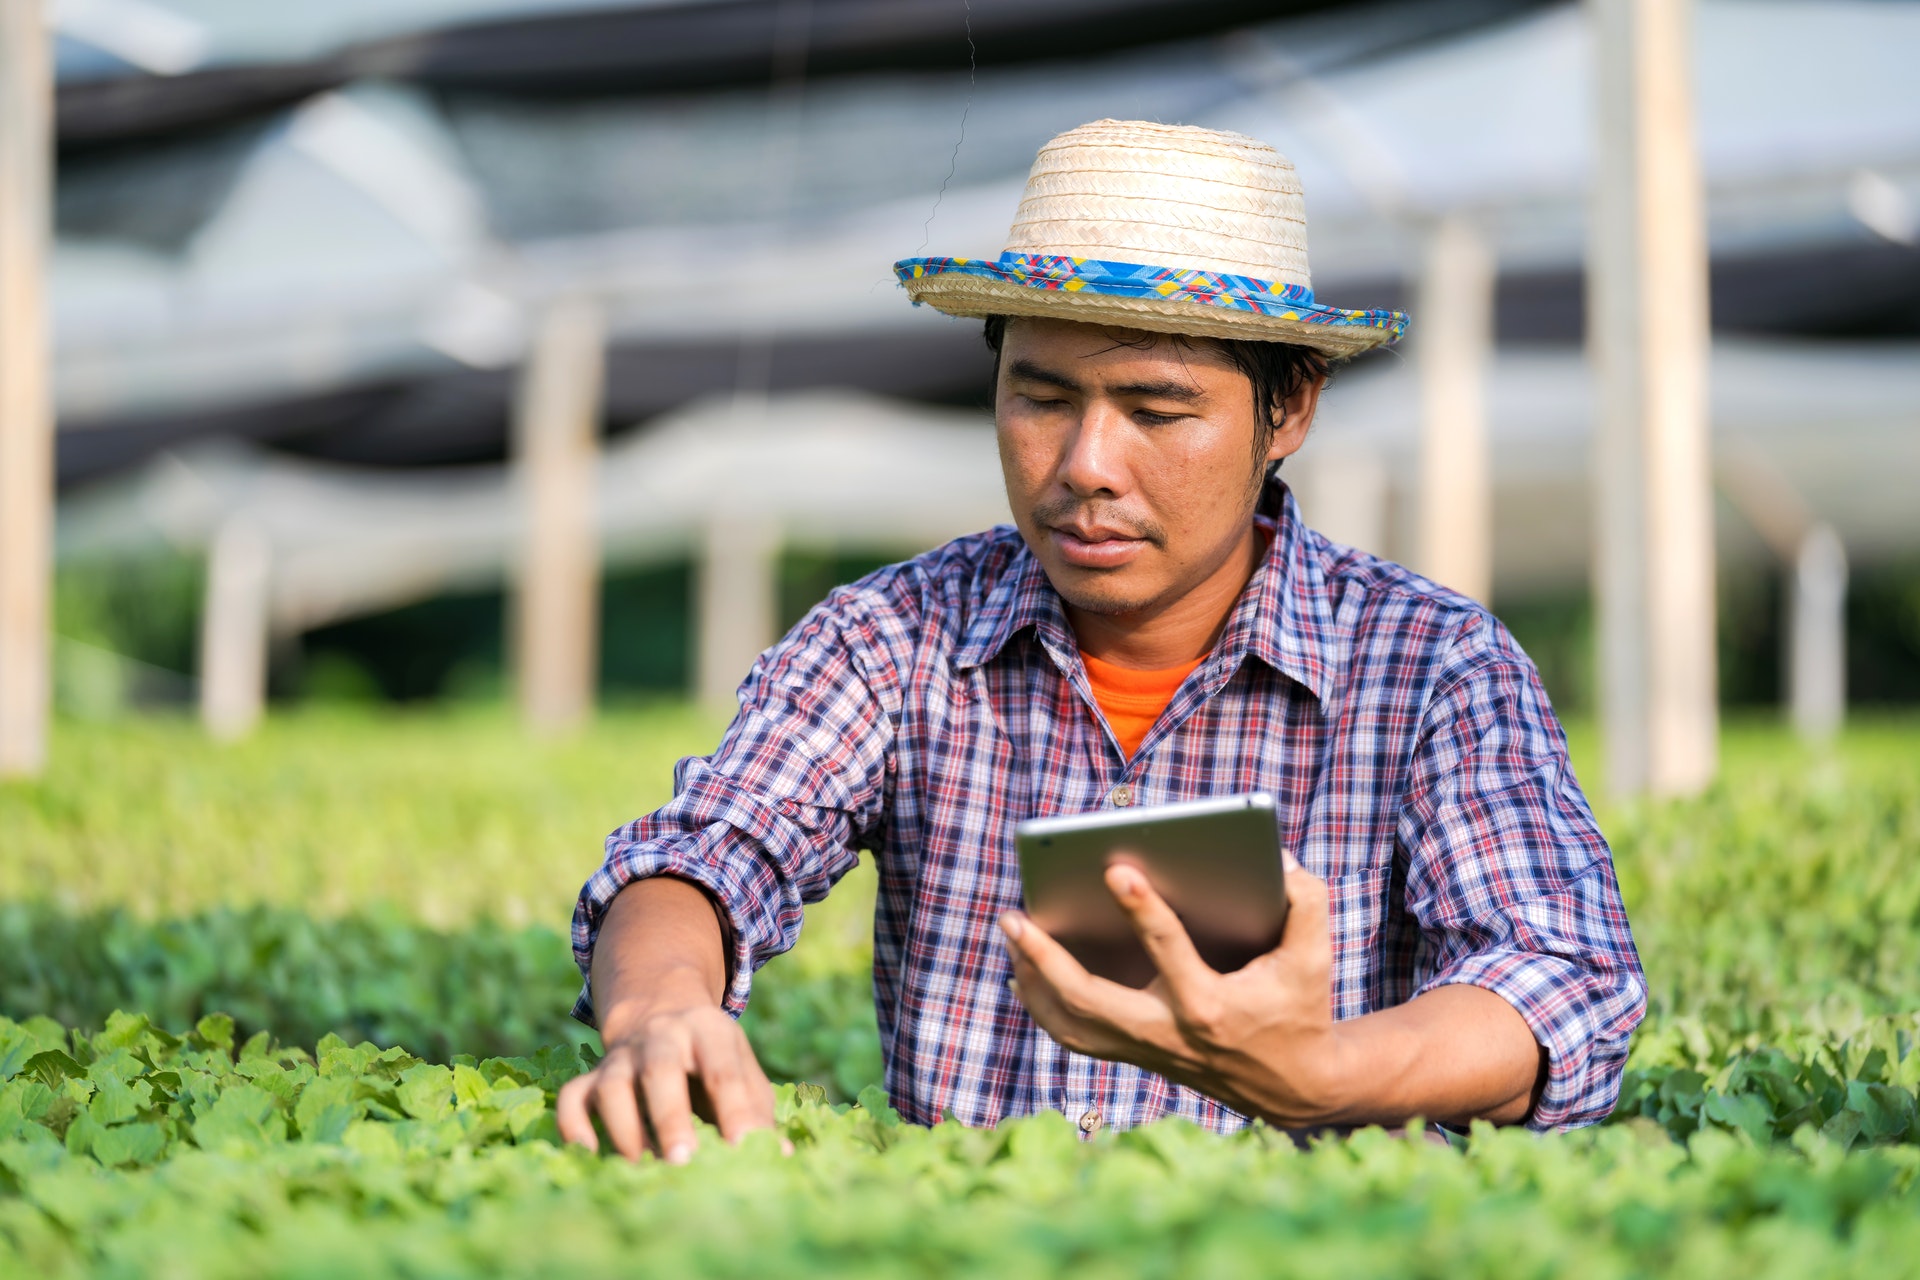 Farmer using digital technology